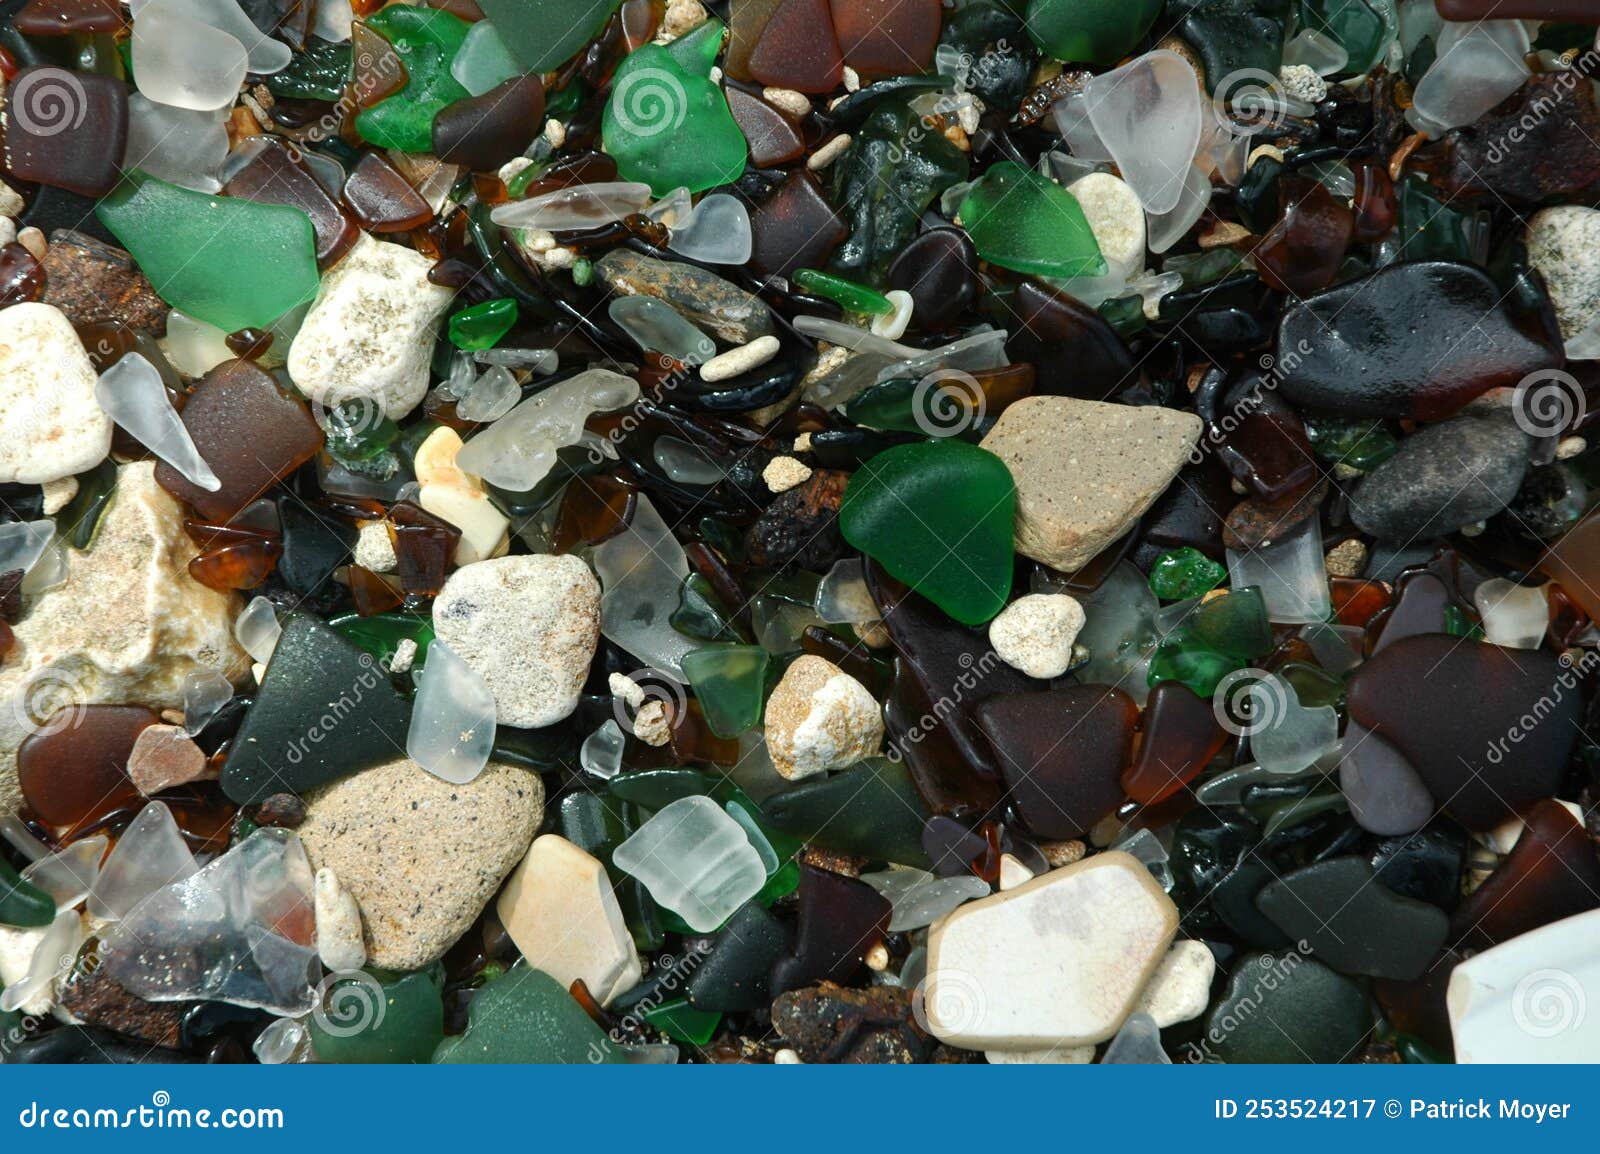 Pile of Multi Sea Glass 5x7 Photo